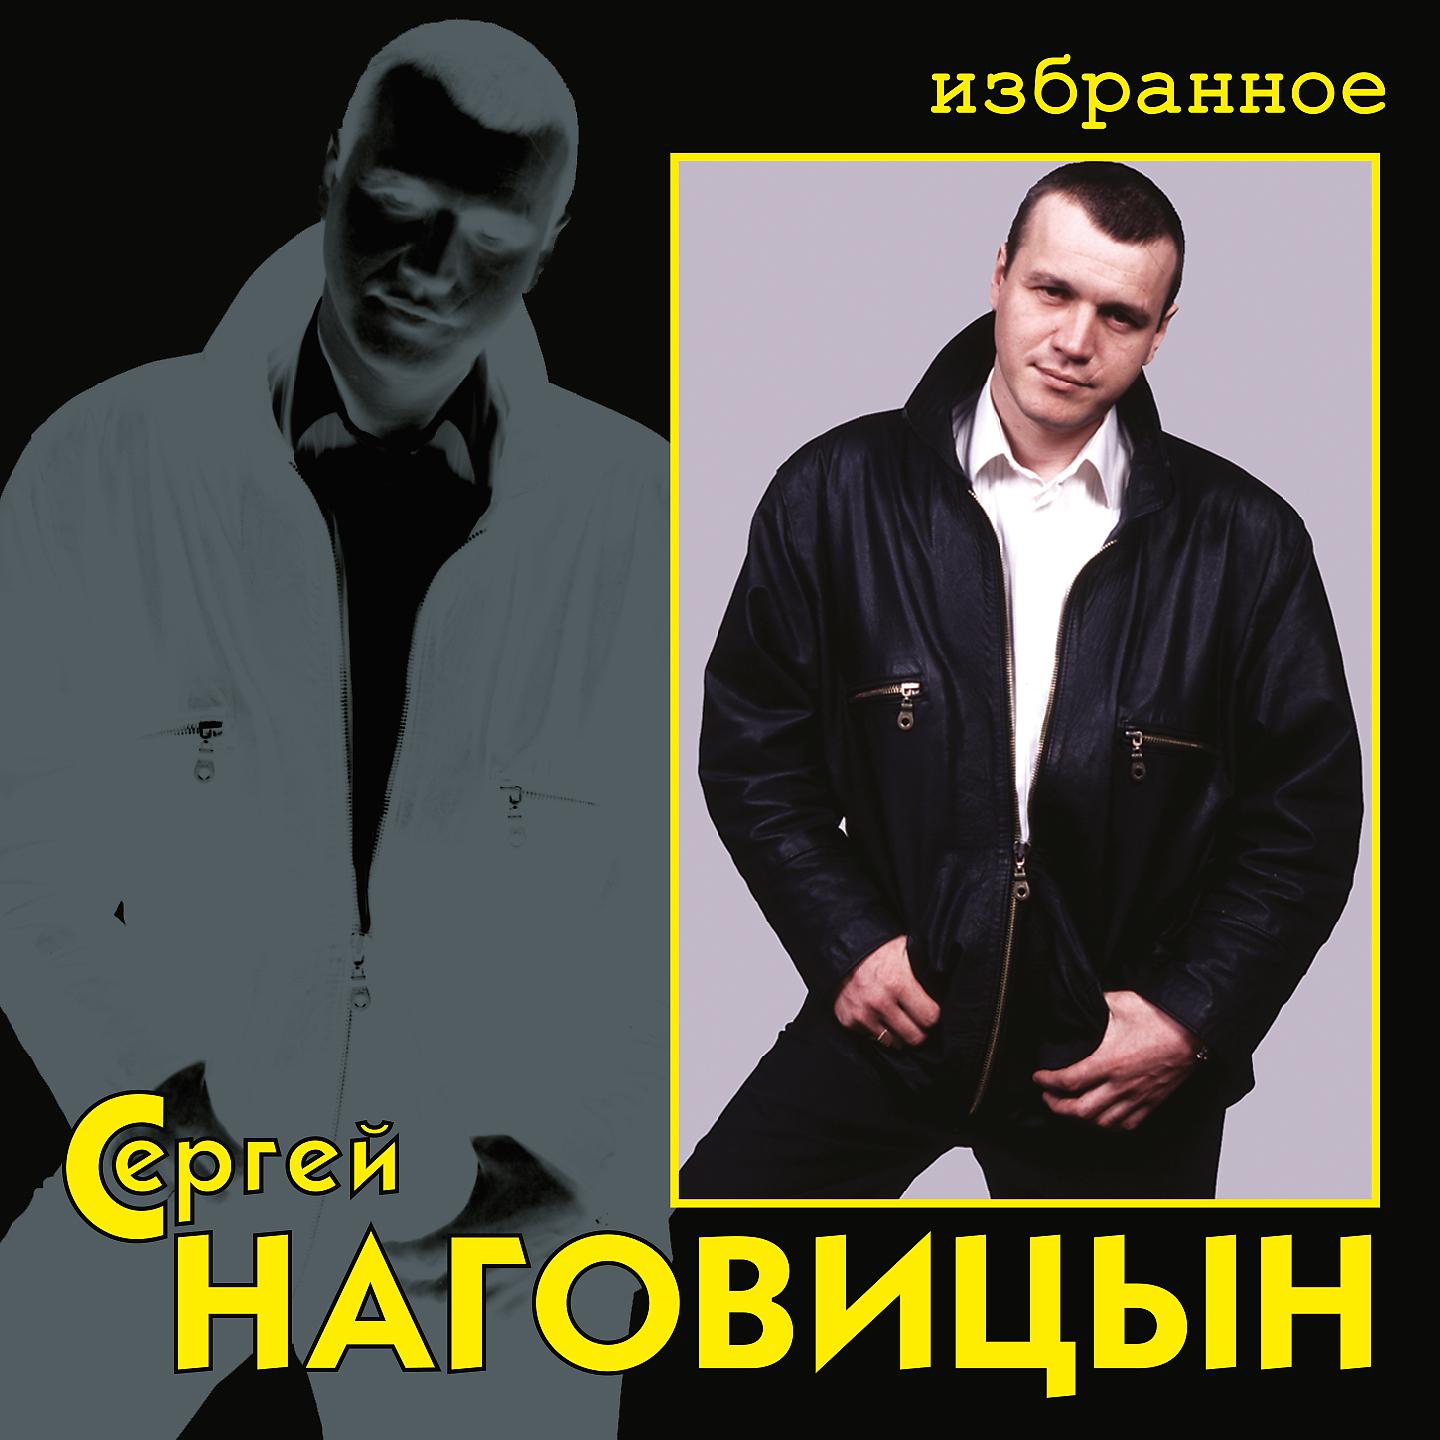 2005 - Приговор Сергей Наговицын